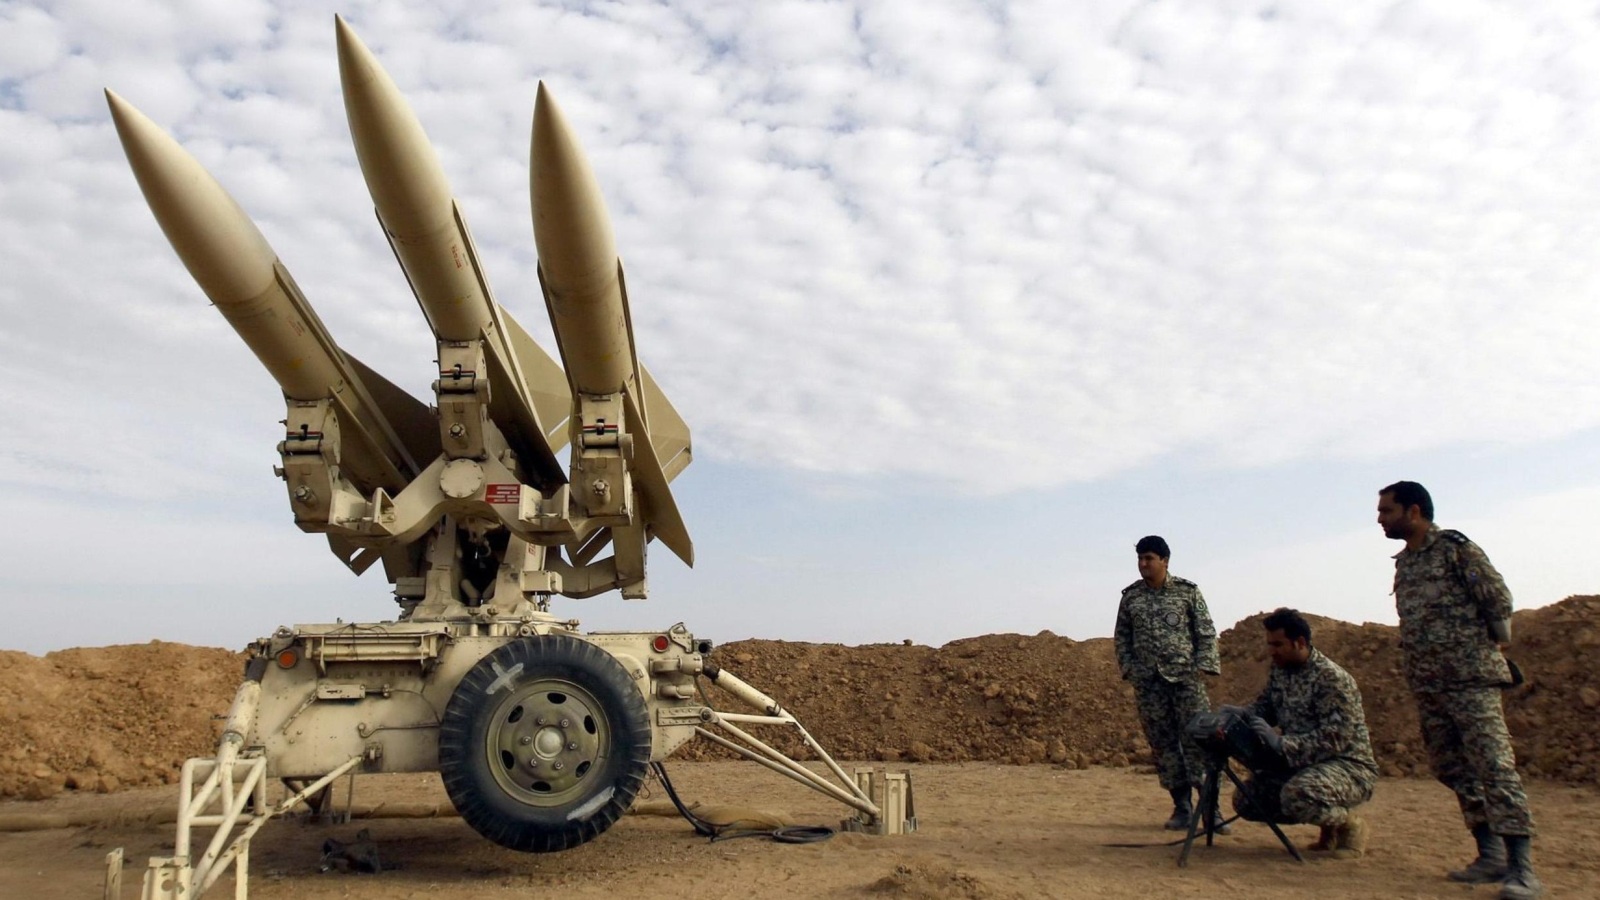 جنود إيرانيون يستعدون لإطلاق صواريخ أرض جو أثناء تمرين عسكري أواخر 2012 (الأوروبية)